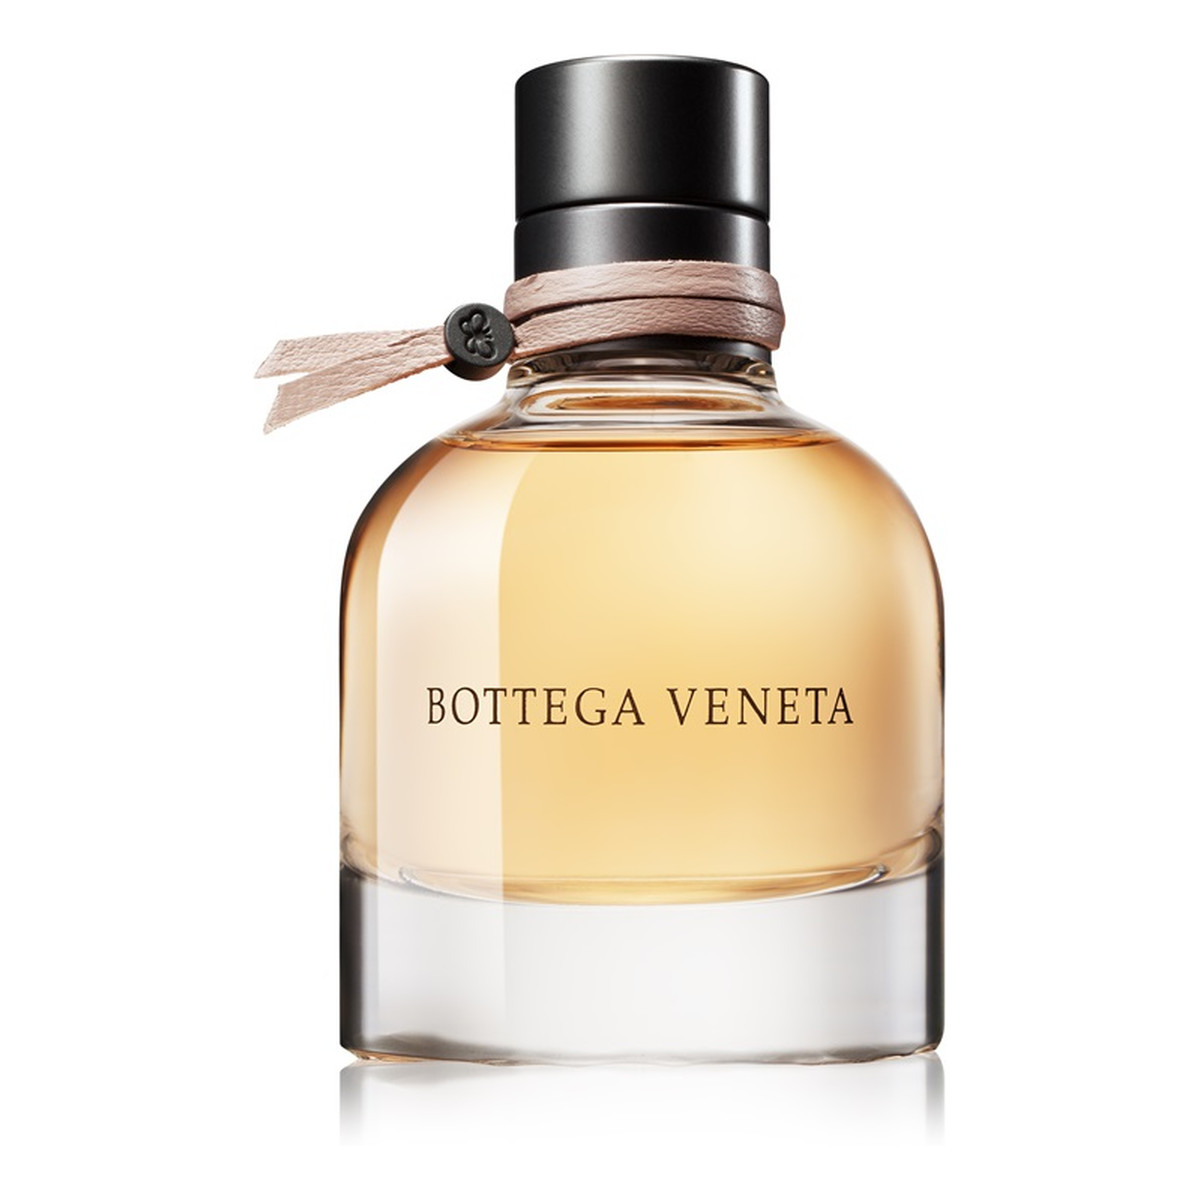 Bottega Veneta Bottega Veneta Woda perfumowana 50ml